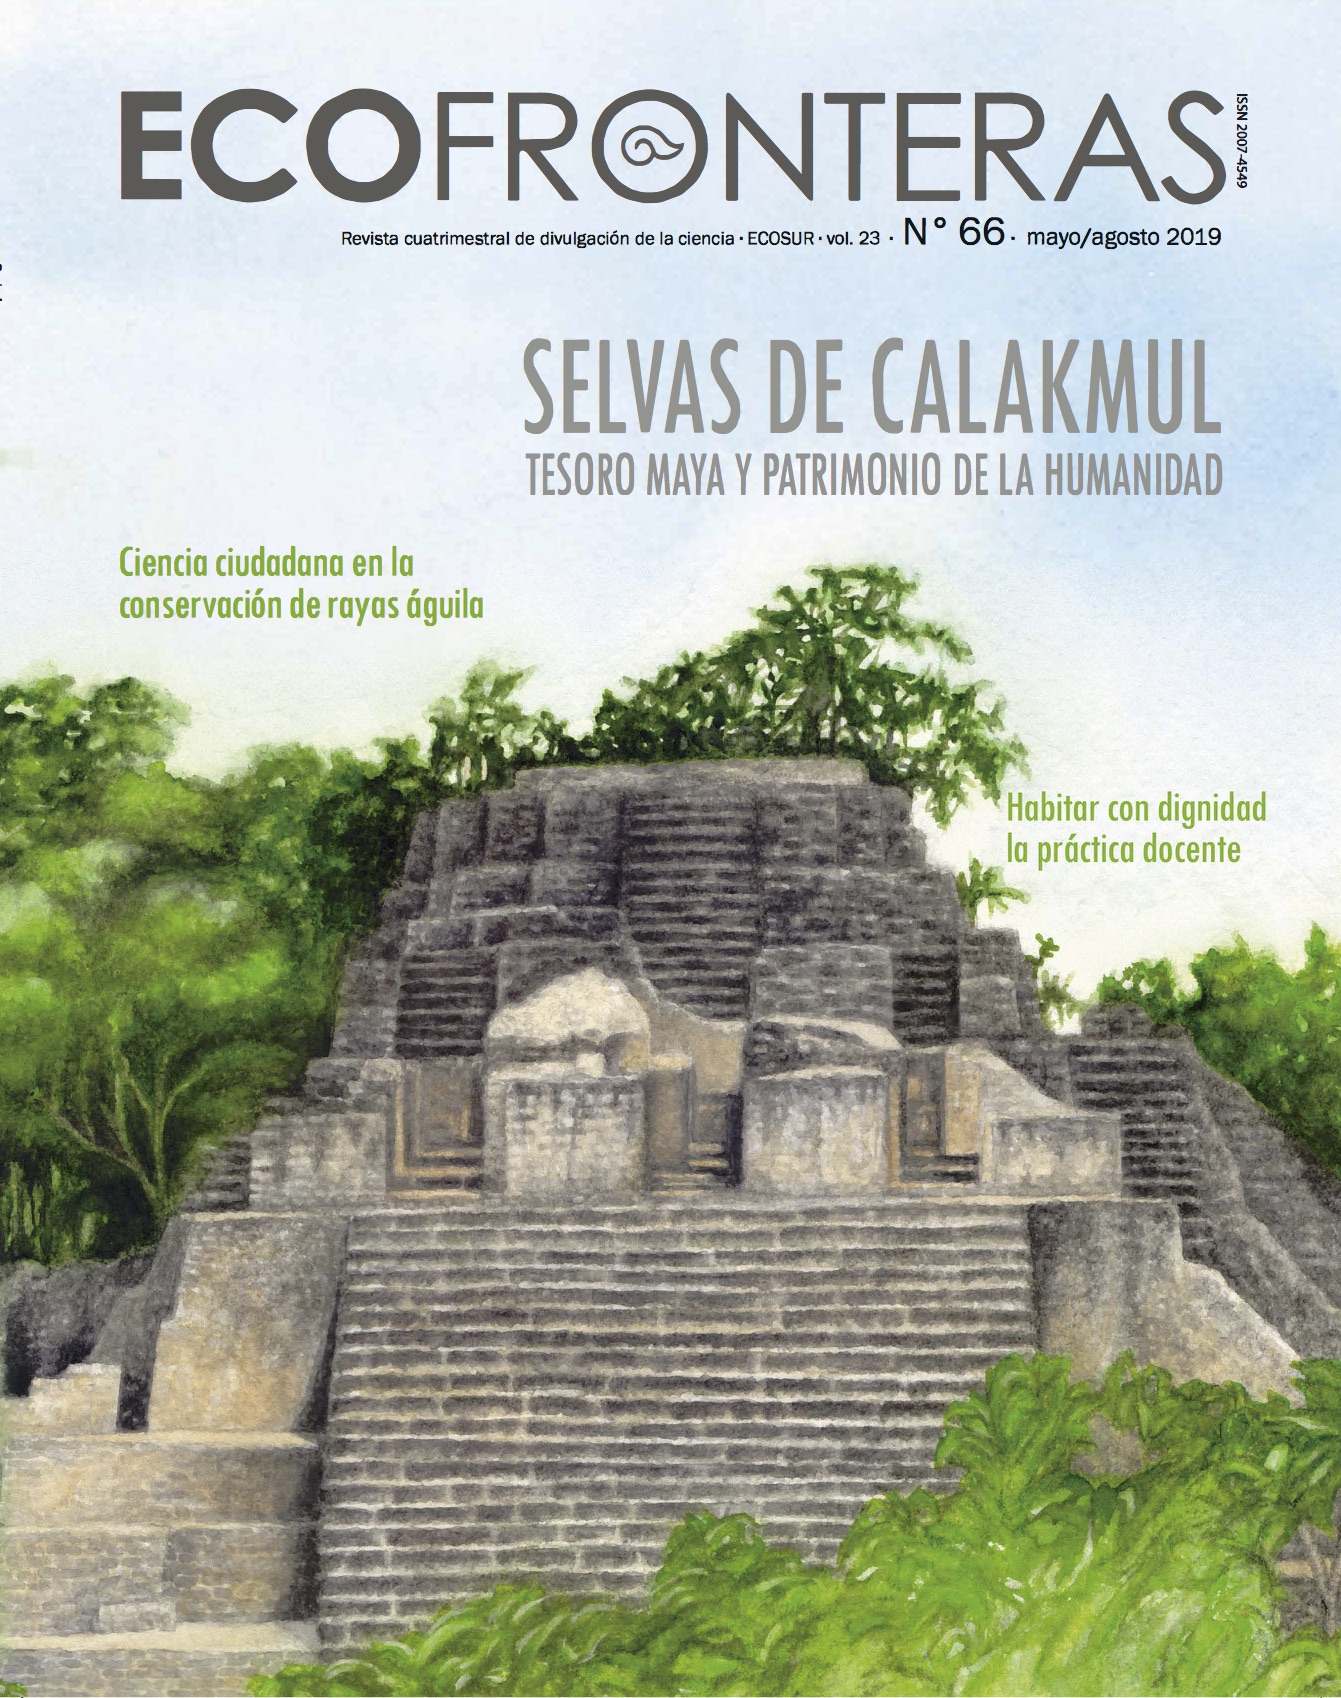 Ecofronteras celebra 30 años de la Reserva de la Biósfera Calakmul